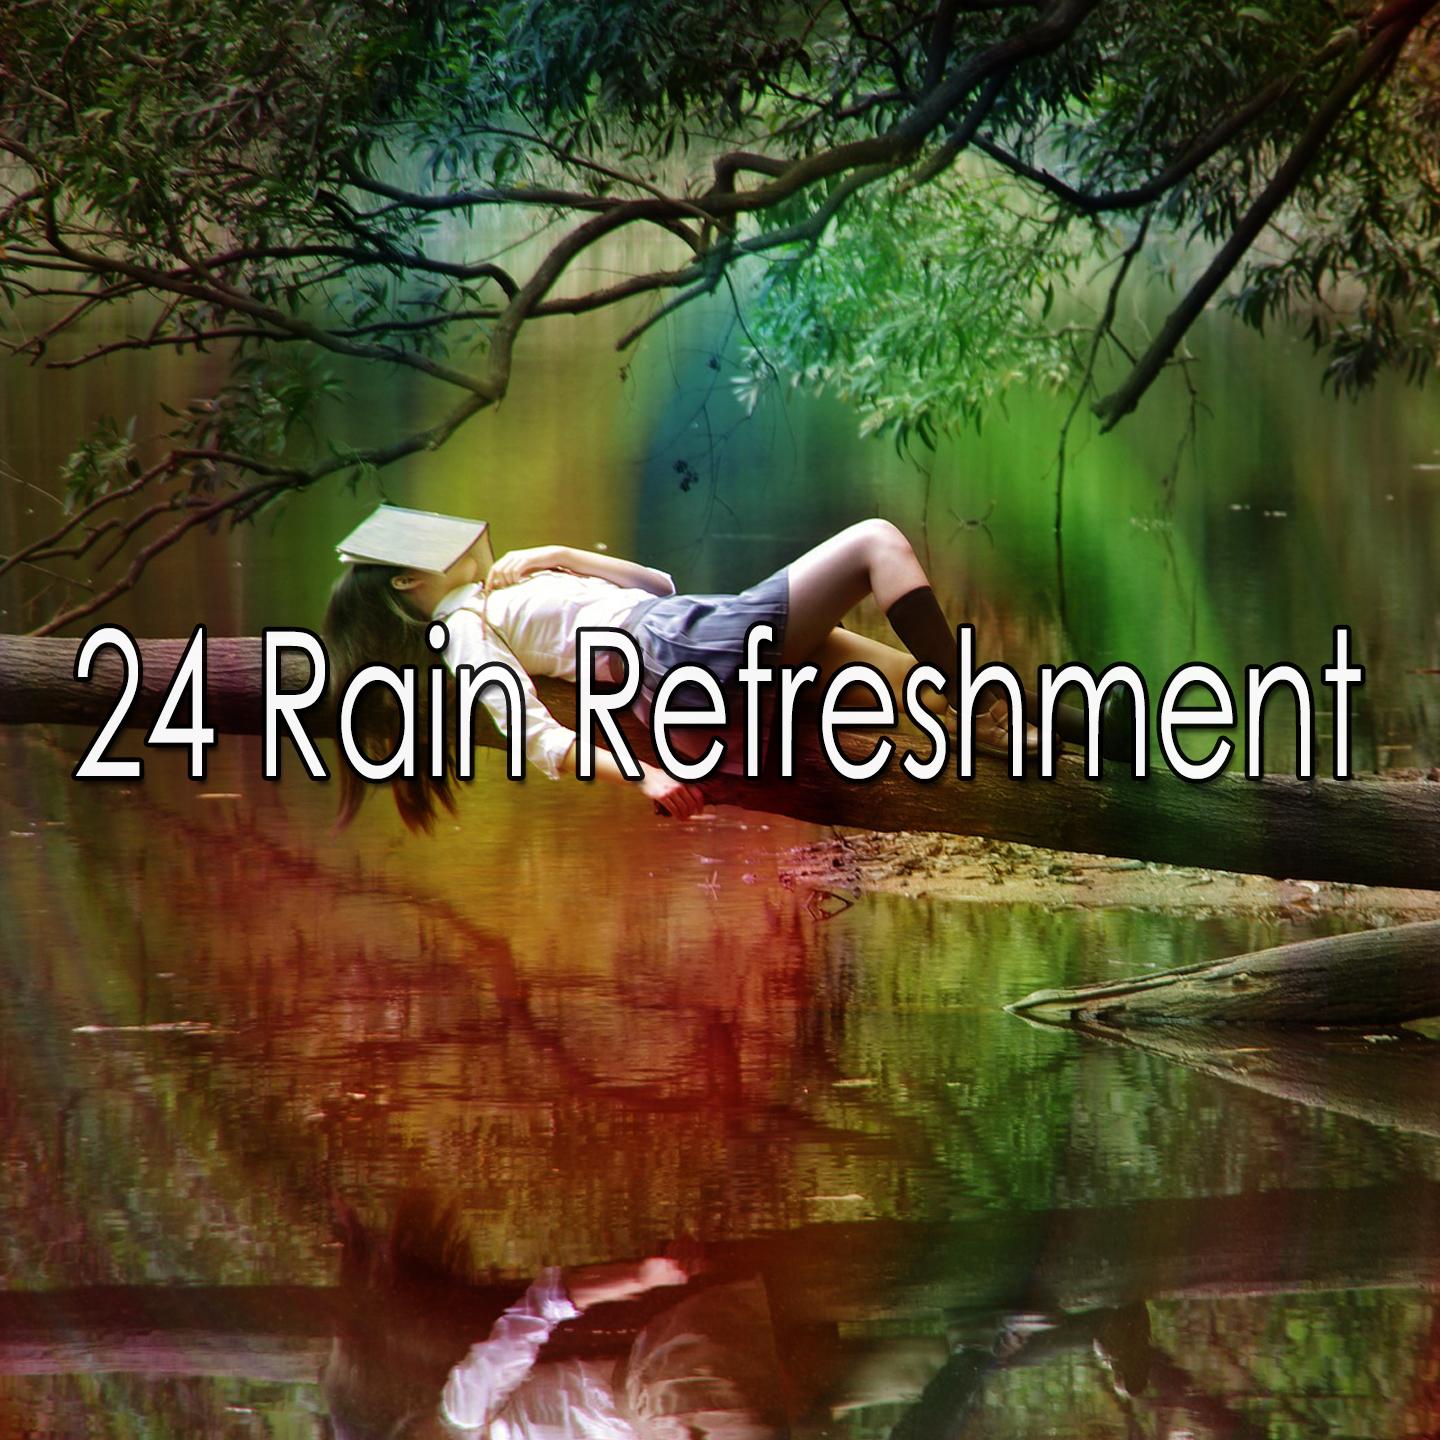 24 Rain Refreshment